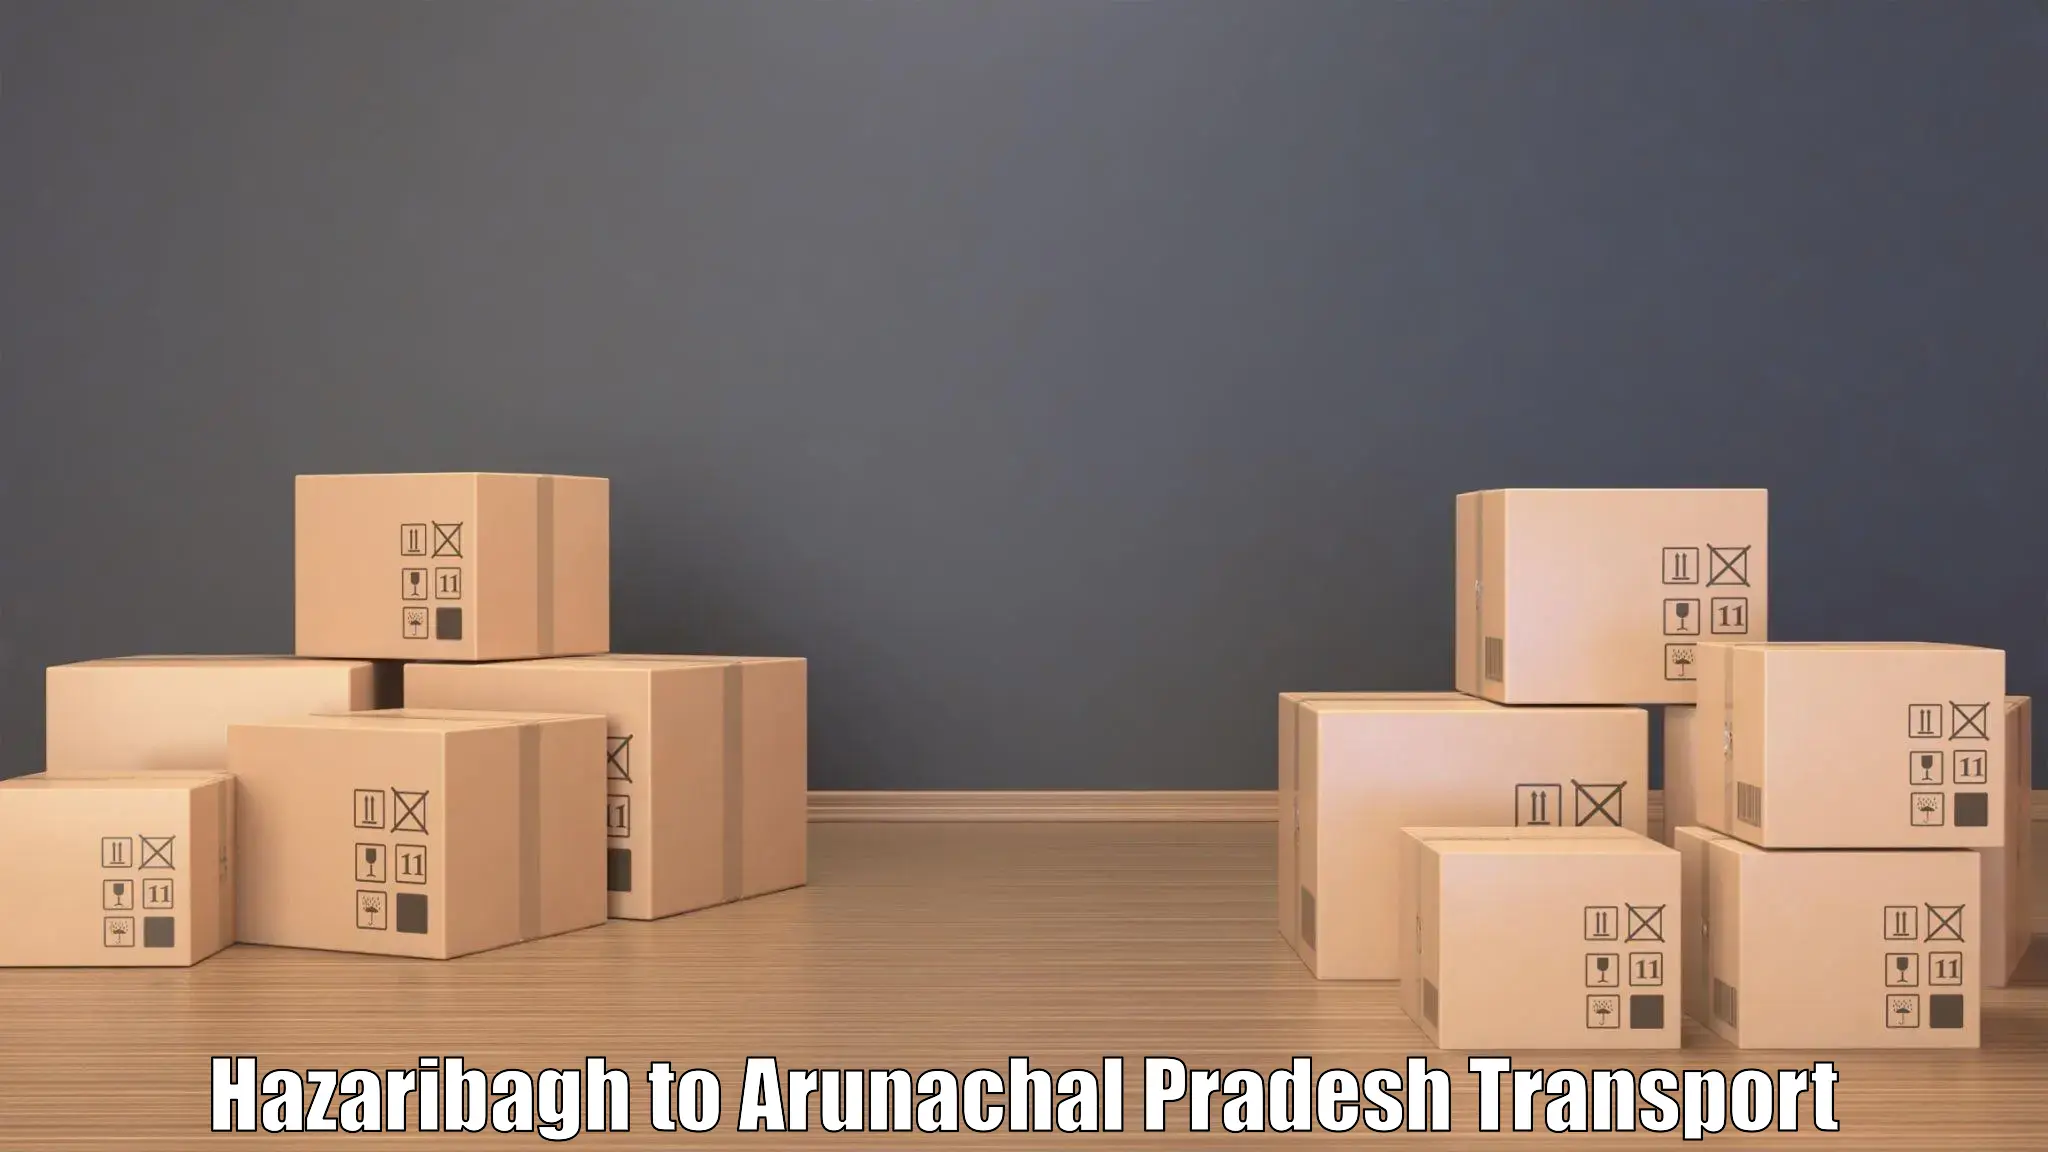 Air cargo transport services in Hazaribagh to Arunachal Pradesh